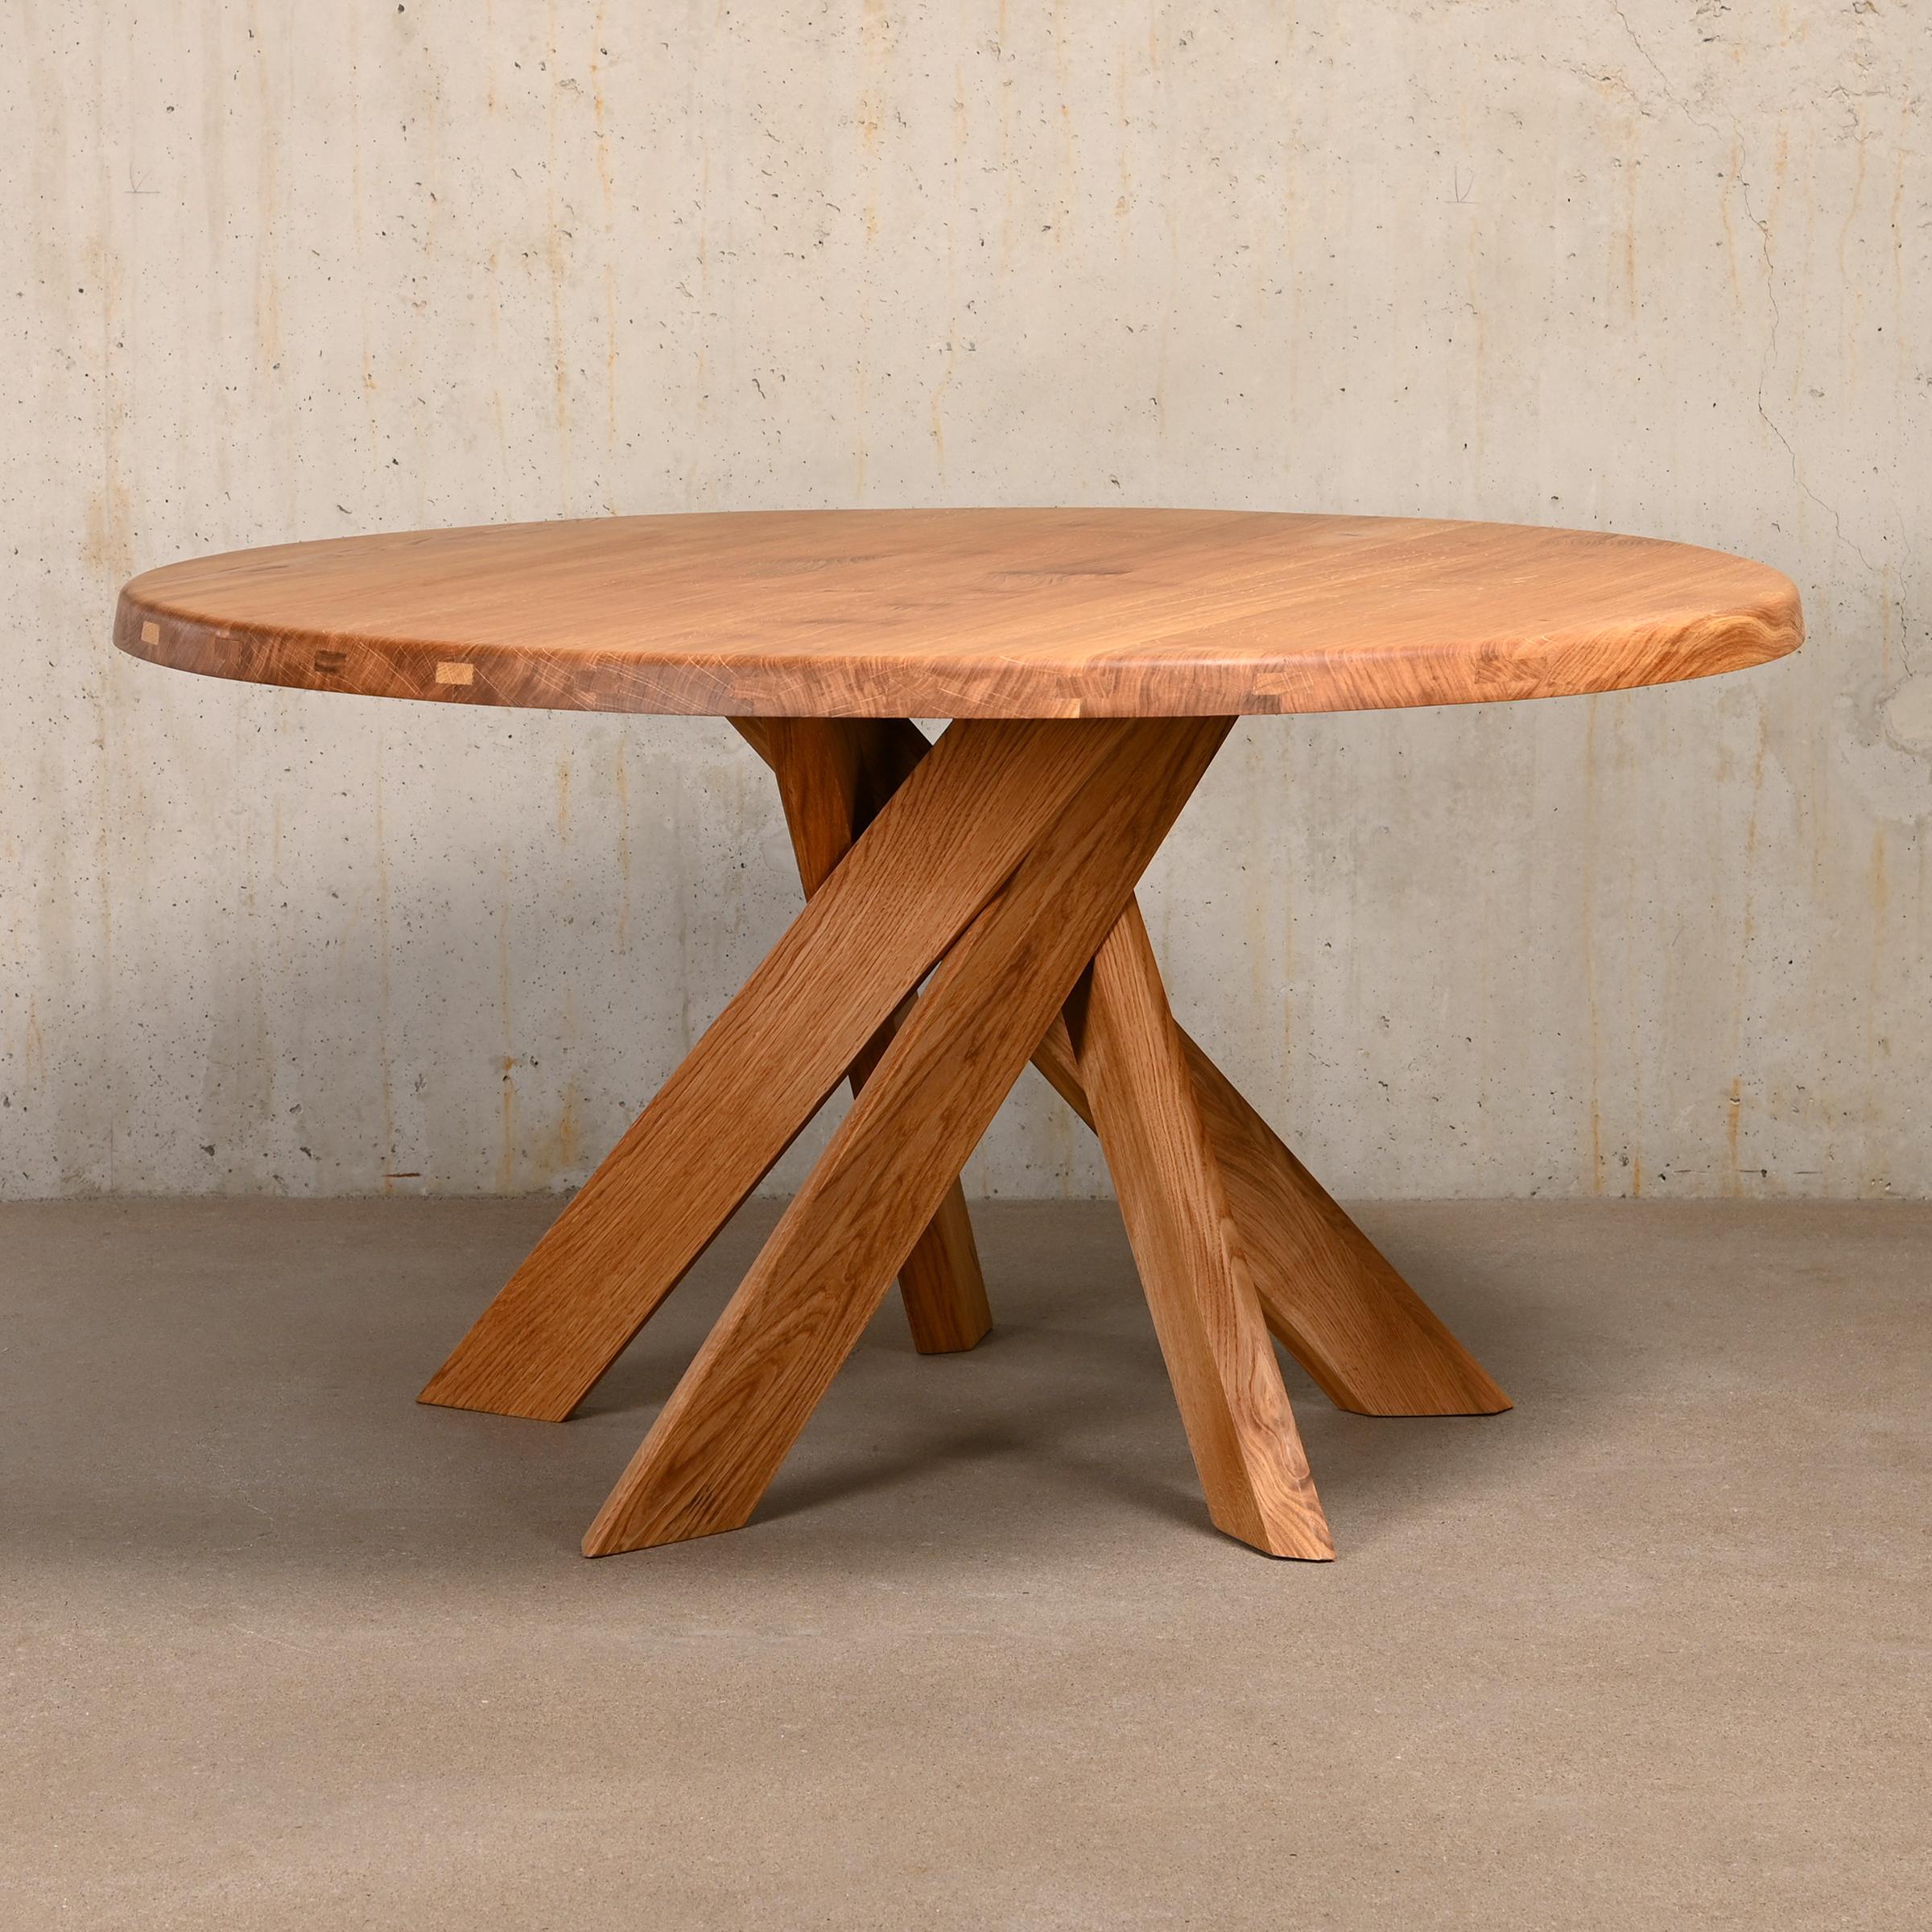 Tisch T21D, entworfen von Pierre Chapo um 1960 und hergestellt von Chapo Création in Frankreich, 2023. 
Massives Eichenholz, mit Naturöl behandelt. Ausgezeichneter Originalzustand und signiert durch den Herstellerstempel. Dieser Tisch kann auch in